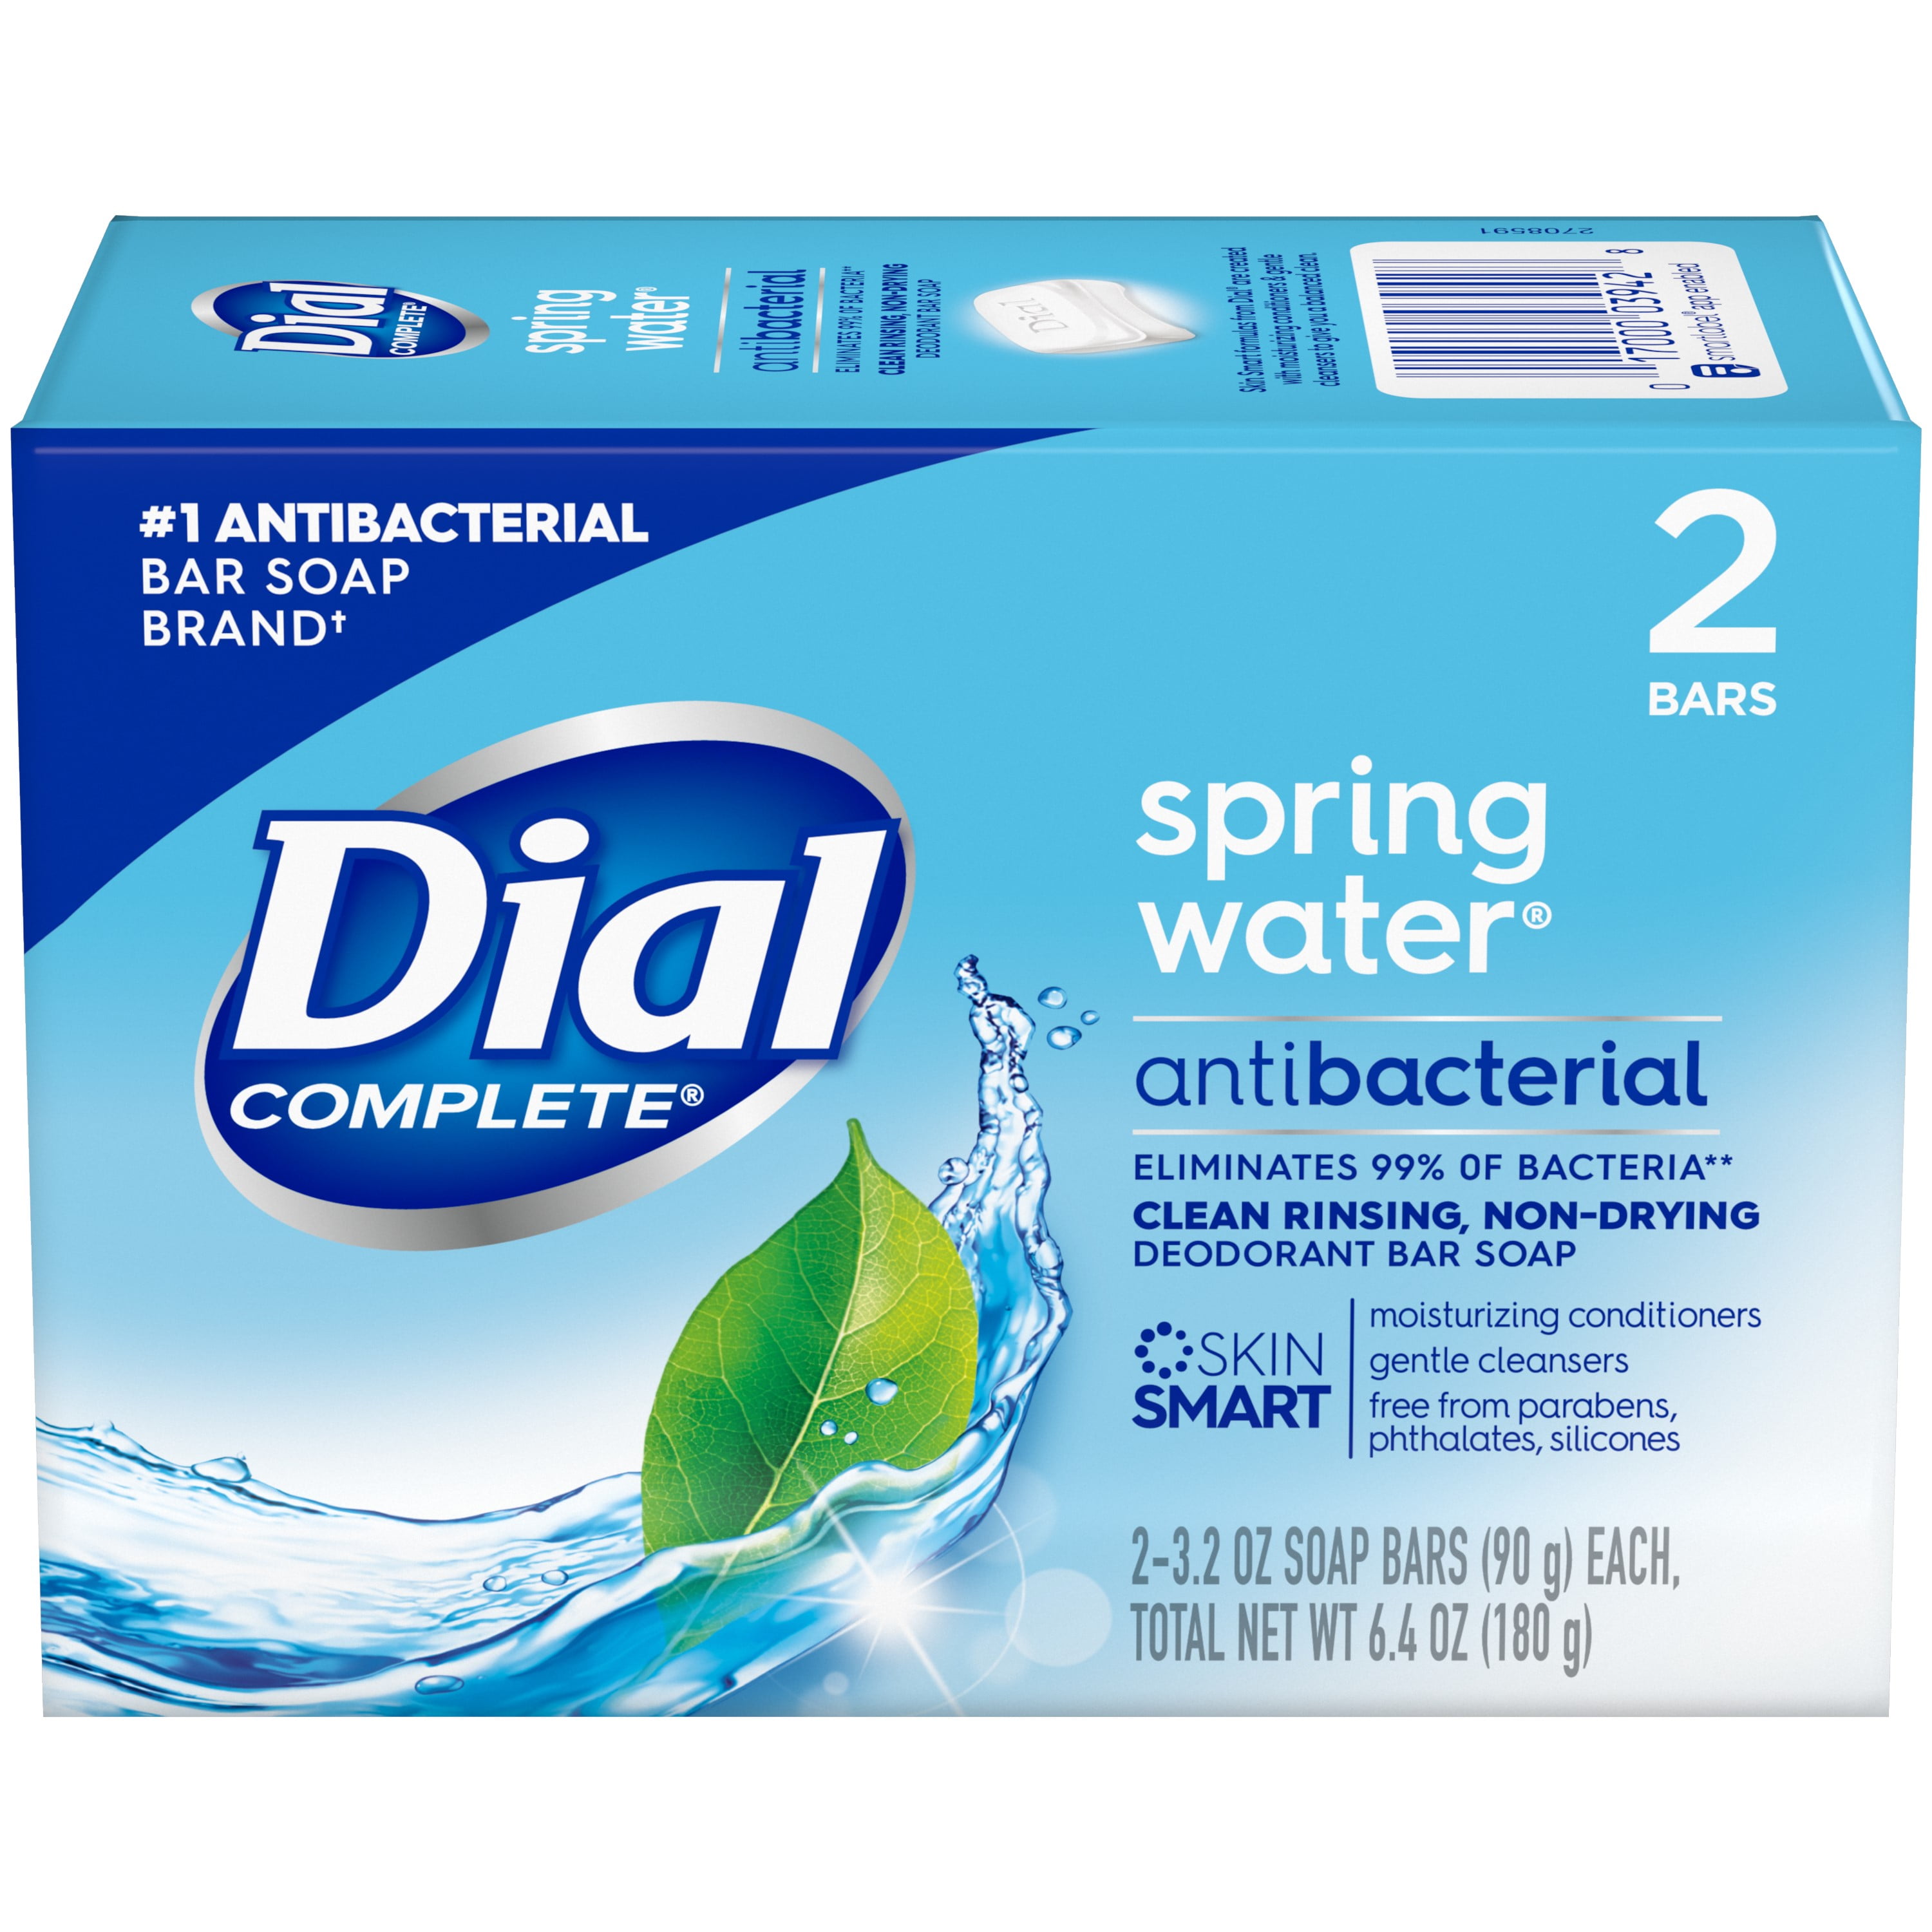 Dial Complete Antibacterial Deodorant Bar Soap, Spring Water, 3.2 oz, 2 Bars